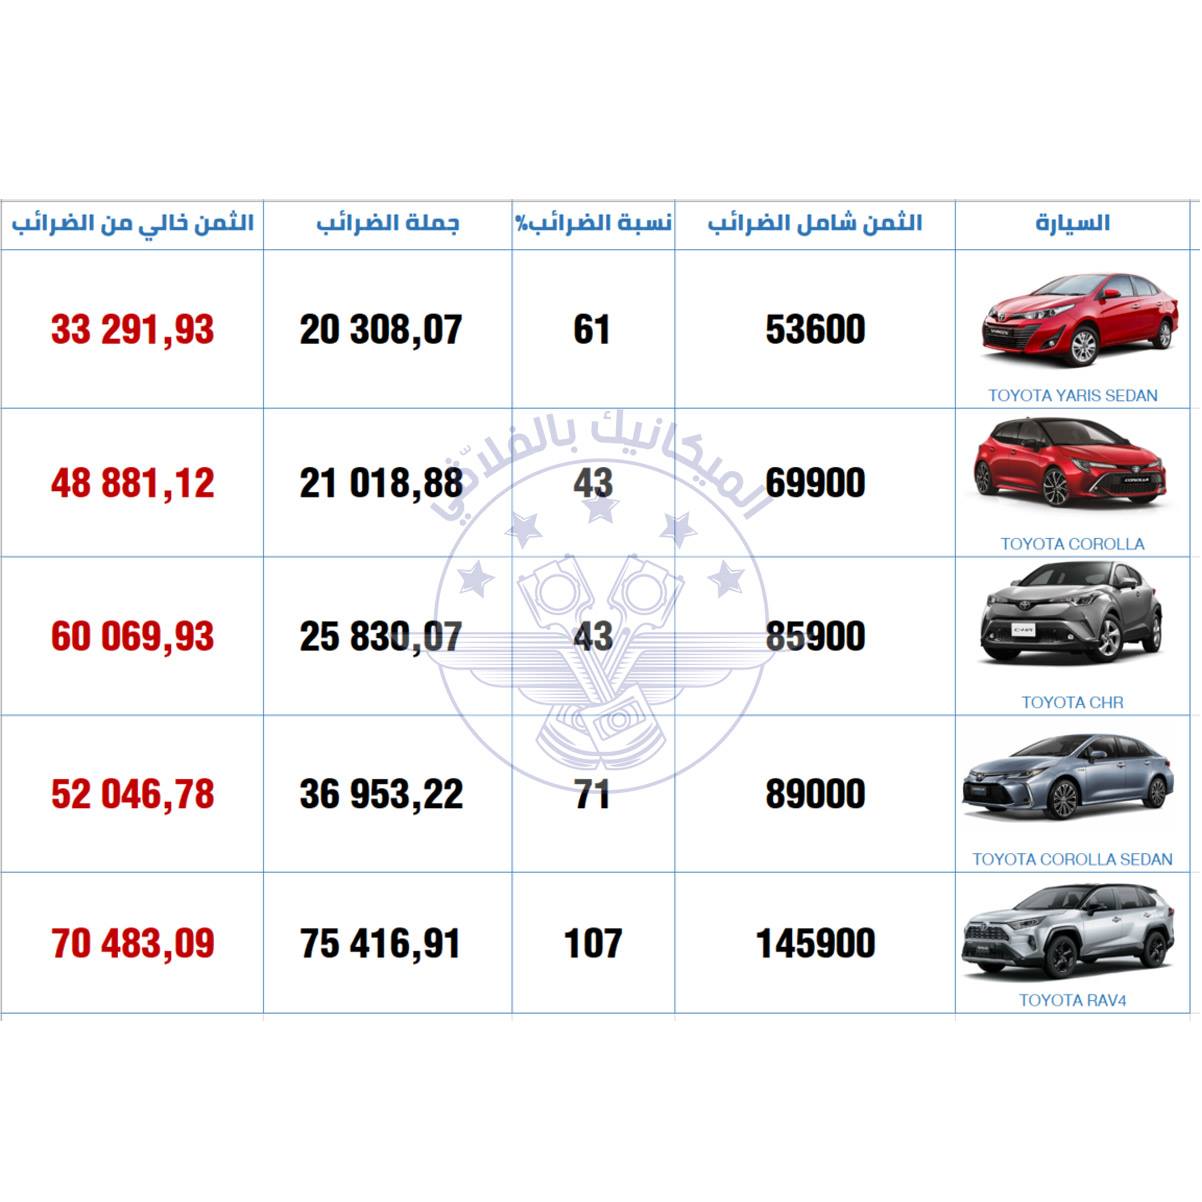 Top 10 des modèles de voitures les plus vendus en Tunisie en 2022 » Petites  annonces en Tunisie - Achat, vente, location sur notre blog